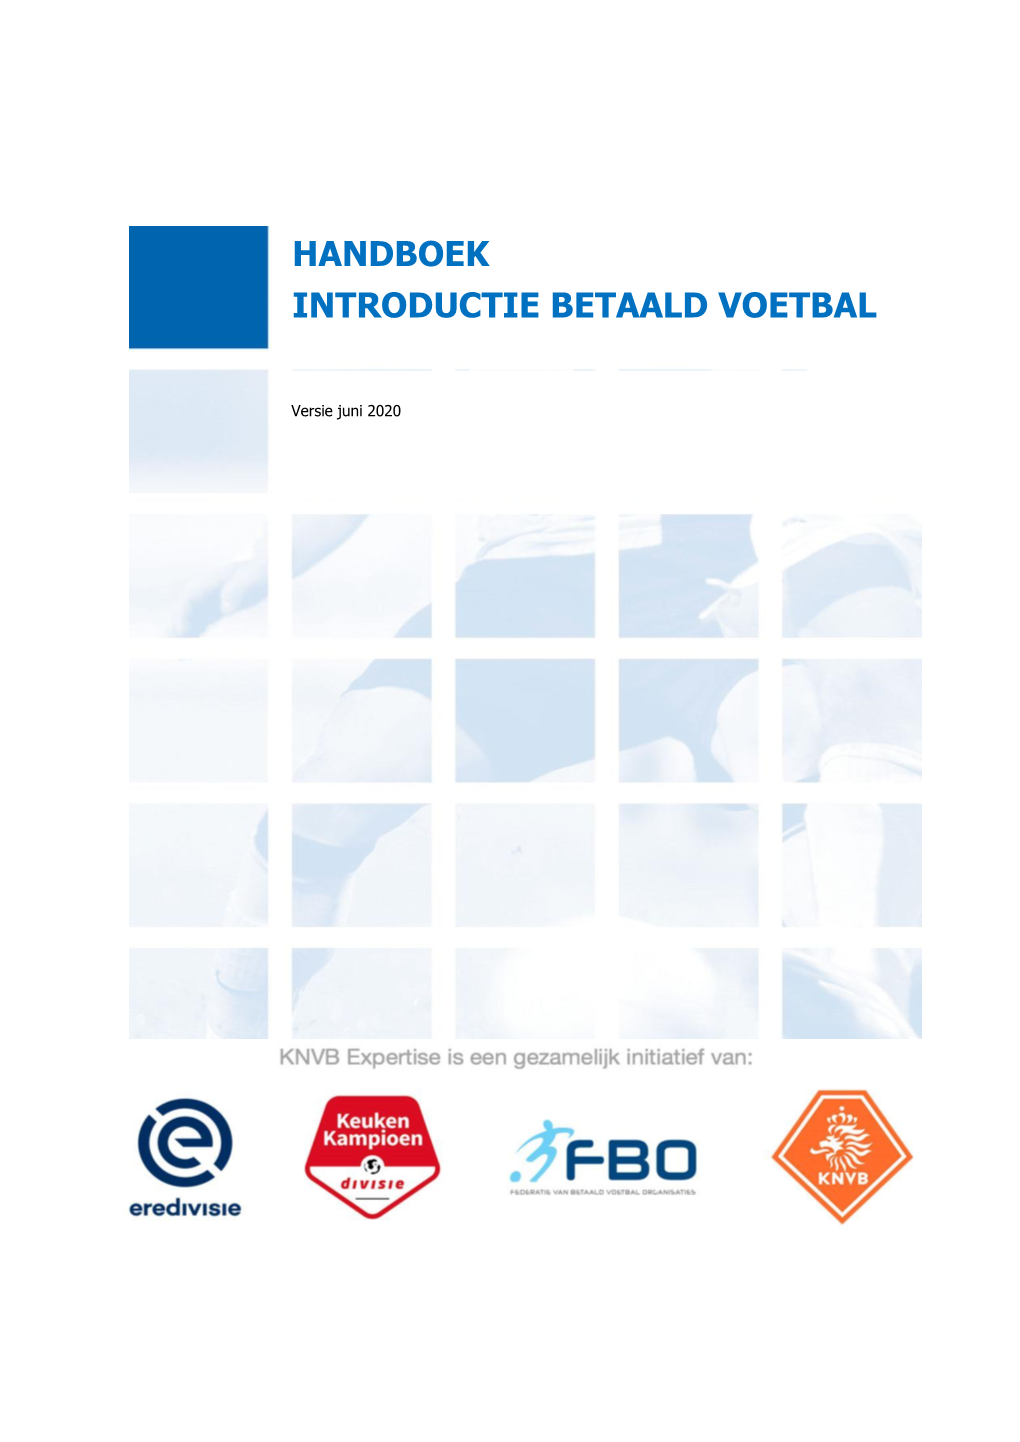 Handboek Introductie Betaald Voetbal